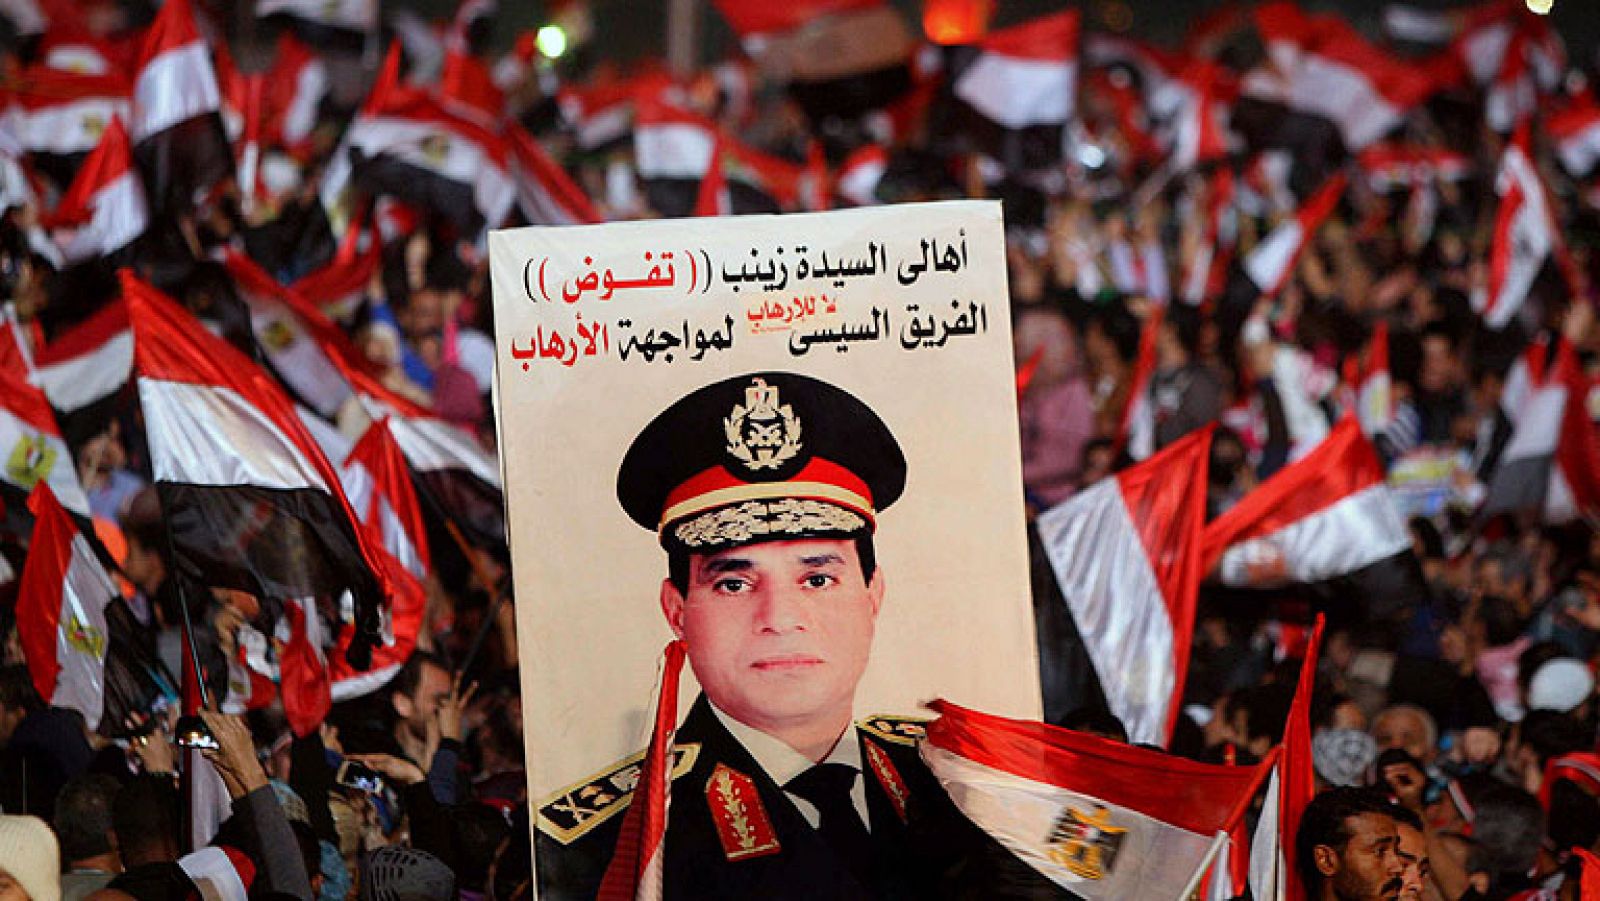  La cúpula militar de Egipto ha autorizado al jefe del Ejército y ministro de Defensa, Abdel Fatah al Sisi, a que se presente a las próximas elecciones presidenciales. Está previsto que Al Sisi anuncie su postura definitiva, según la agencia, que ha añadido que el plazo de inscripción de los candidatos para las presidenciales comenzará el próximo 18 de febrero.